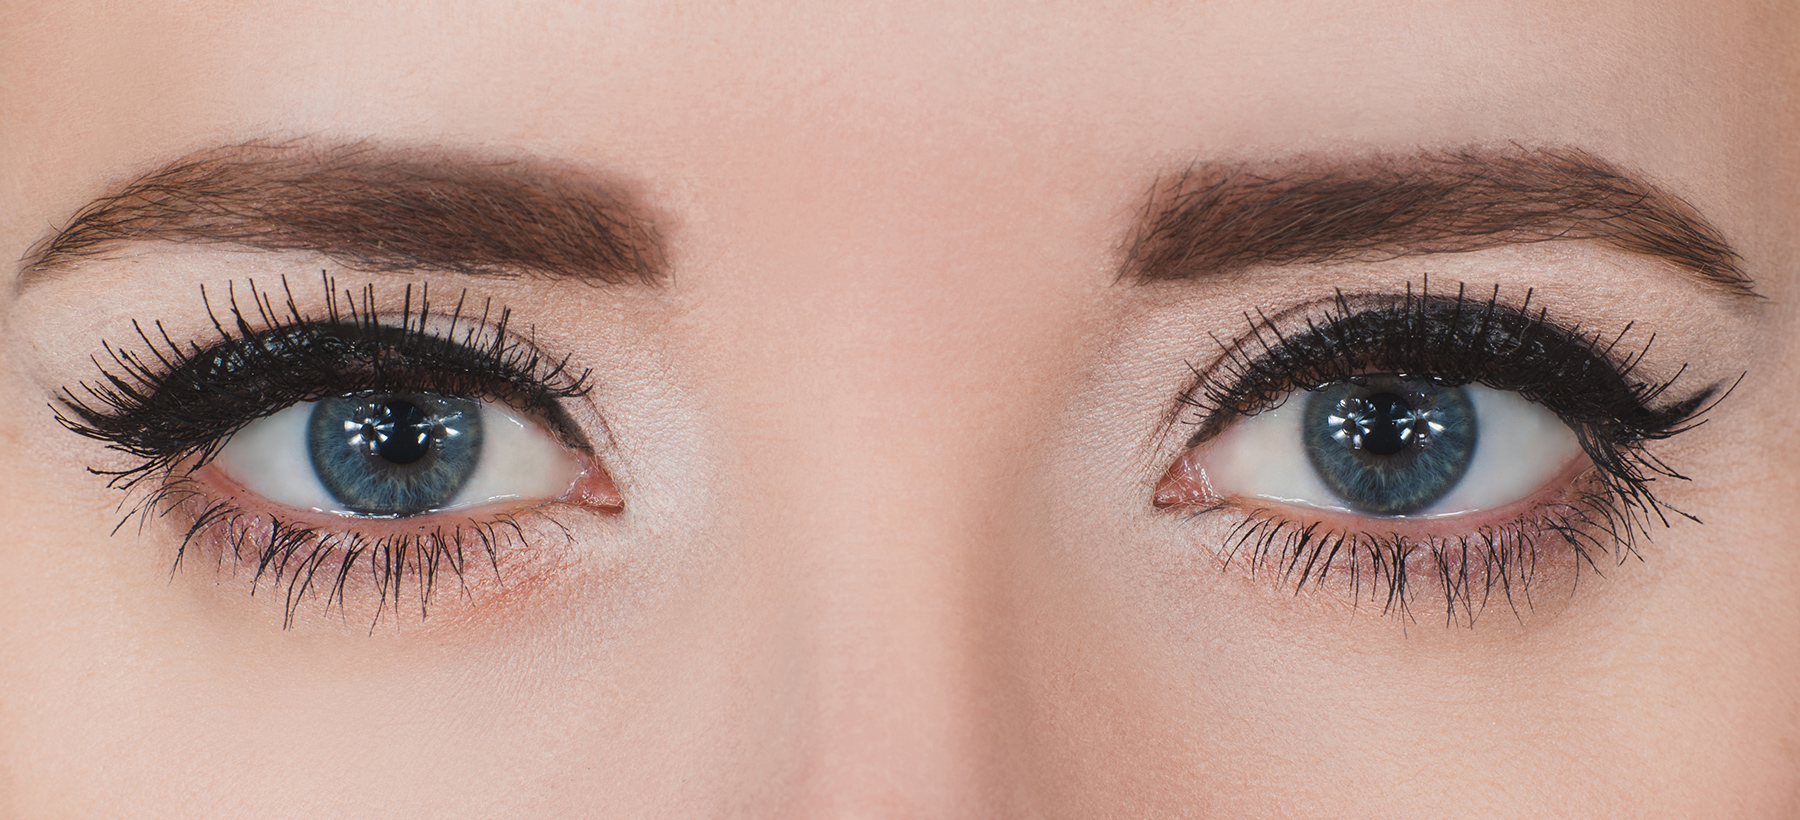 Fotografija oči, ki so naličene z eyelinerjem.